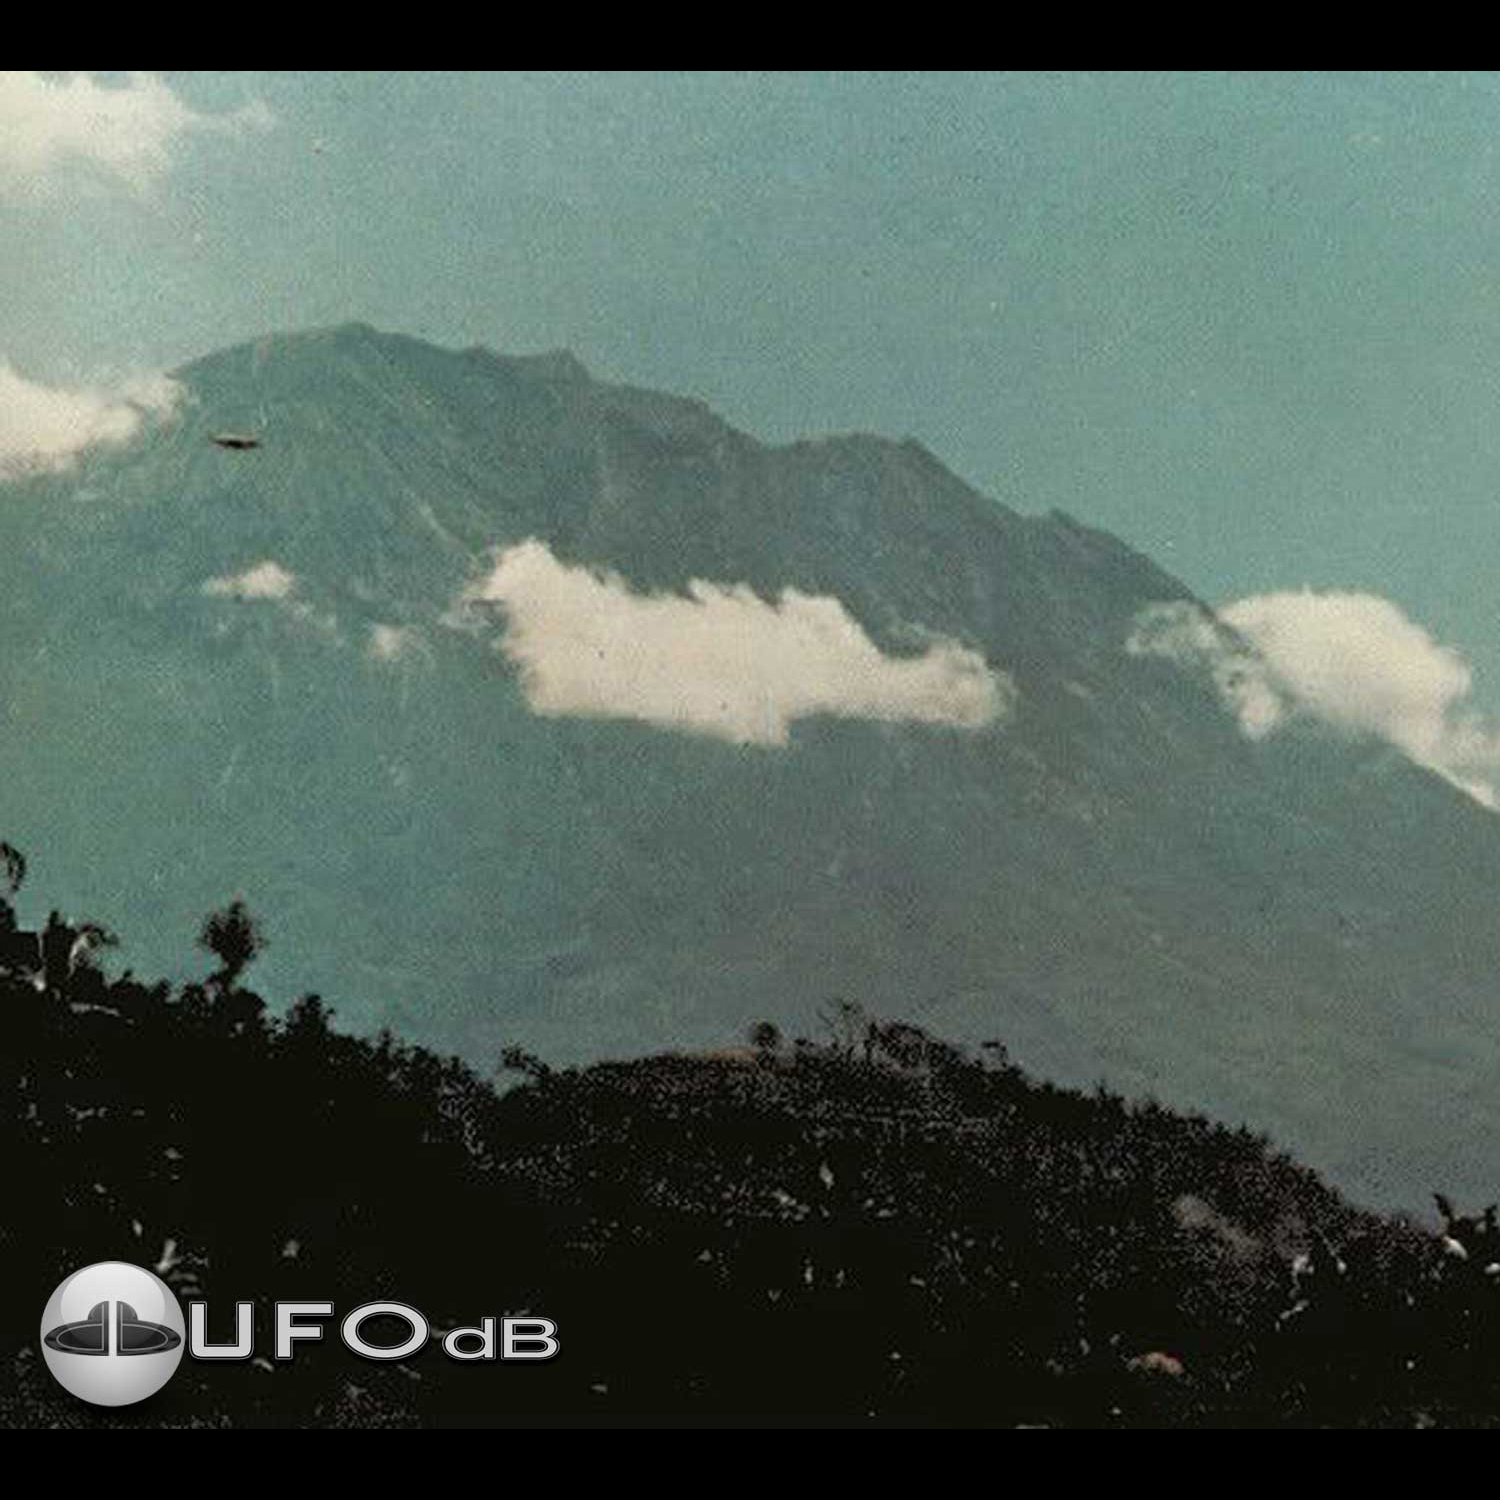 UFO Picture - UFO in Bali island, Indonesia - UFO Picture 1973 UFO Picture #38-1